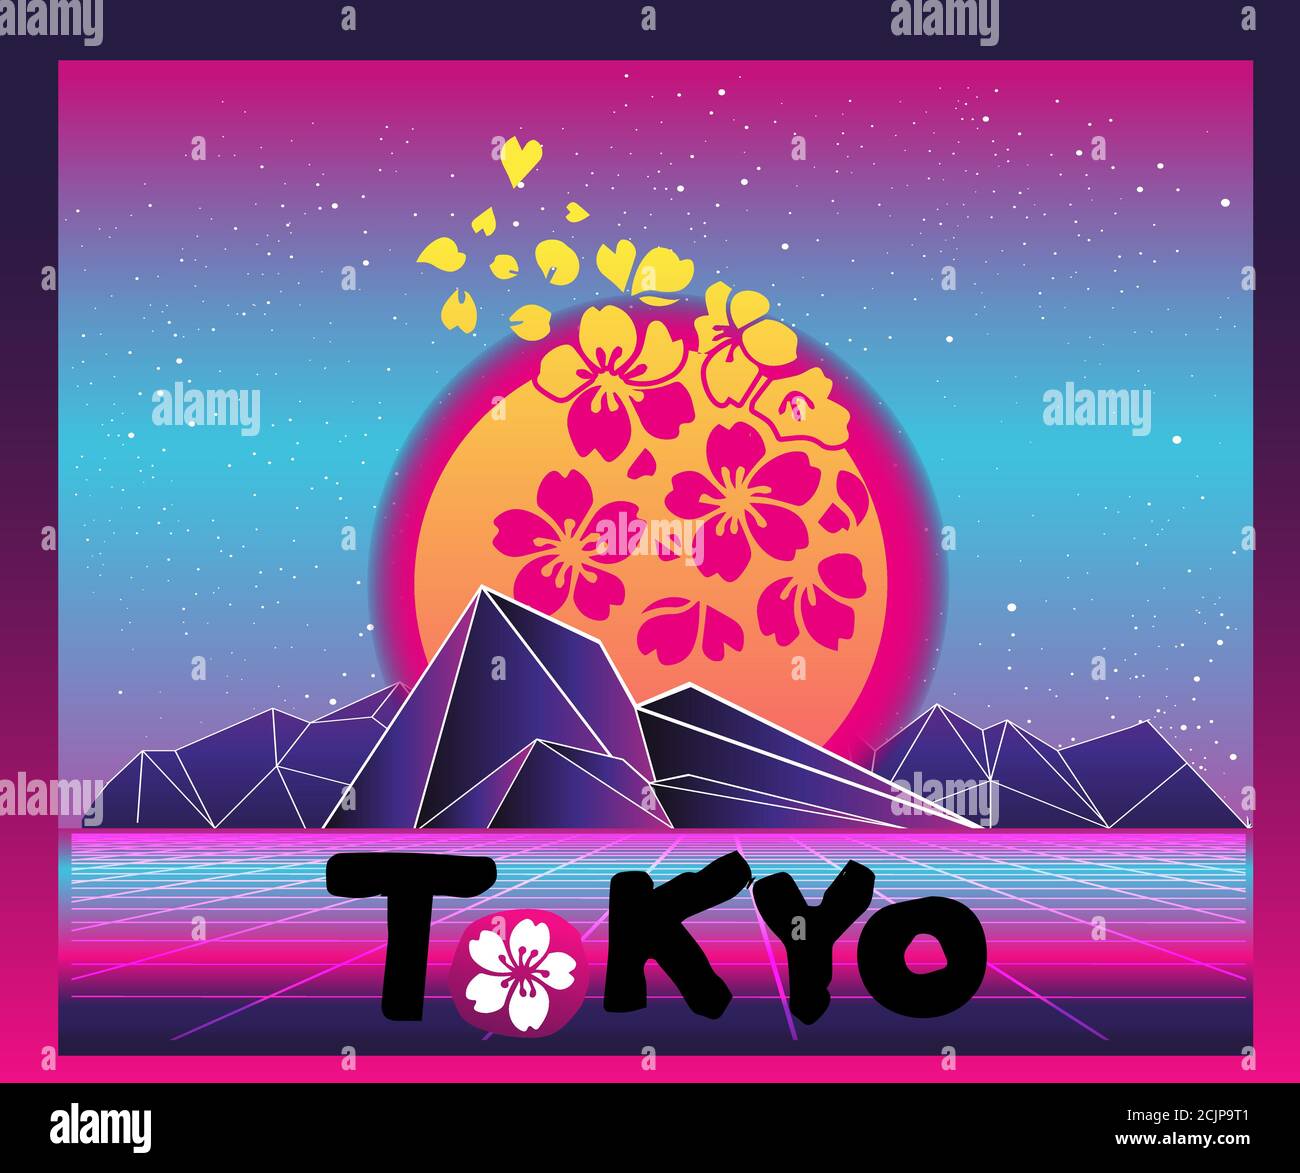 Estetica Vaporwave T-shirt Stampa modello con Sole e Montagne: Anni '90 retro Giappone Cartoon Kawaii Otaku Hipster Style, Synthwave / Retrowave Neon C. Illustrazione Vettoriale